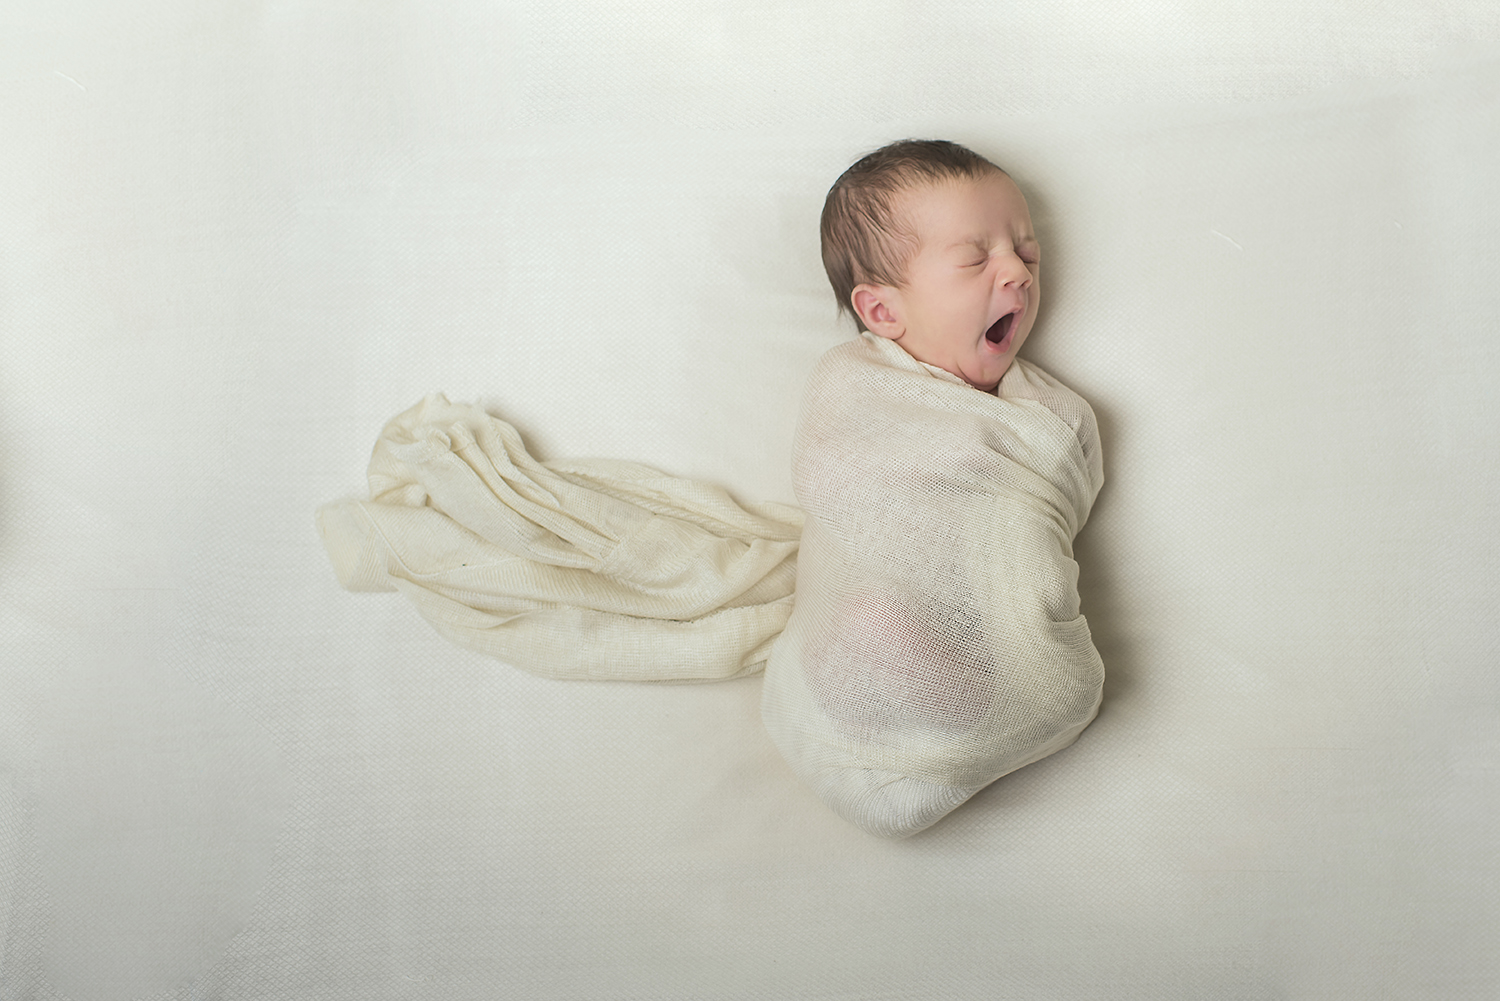 South Shore and Boston Family Child Newborn Photographer Newborn-22.jpg